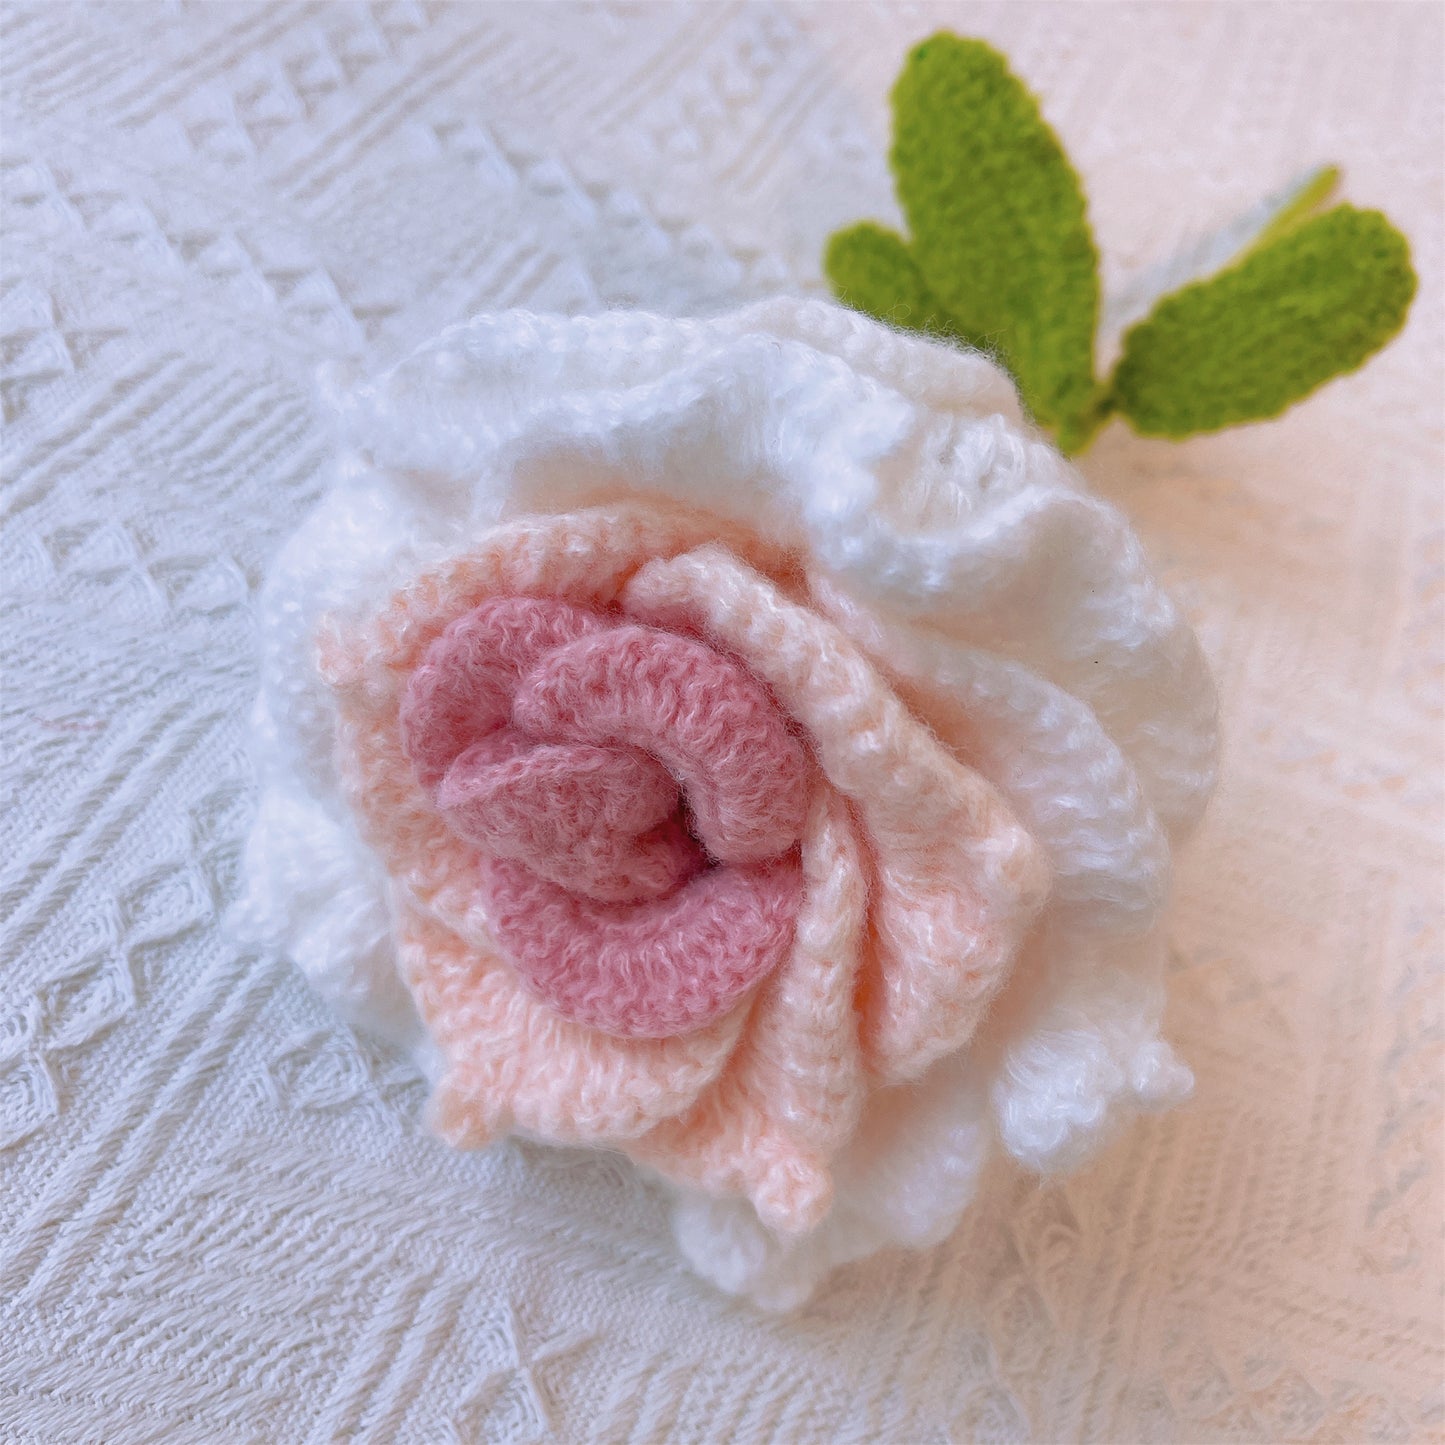 Splendeur fleurie : Bouquet de collection rose au crochet fabriqué à la main - Une luxueuse tapisserie de fil et d'élégance pour des moments inoubliables - Roses, tulipes, pompons, œillets